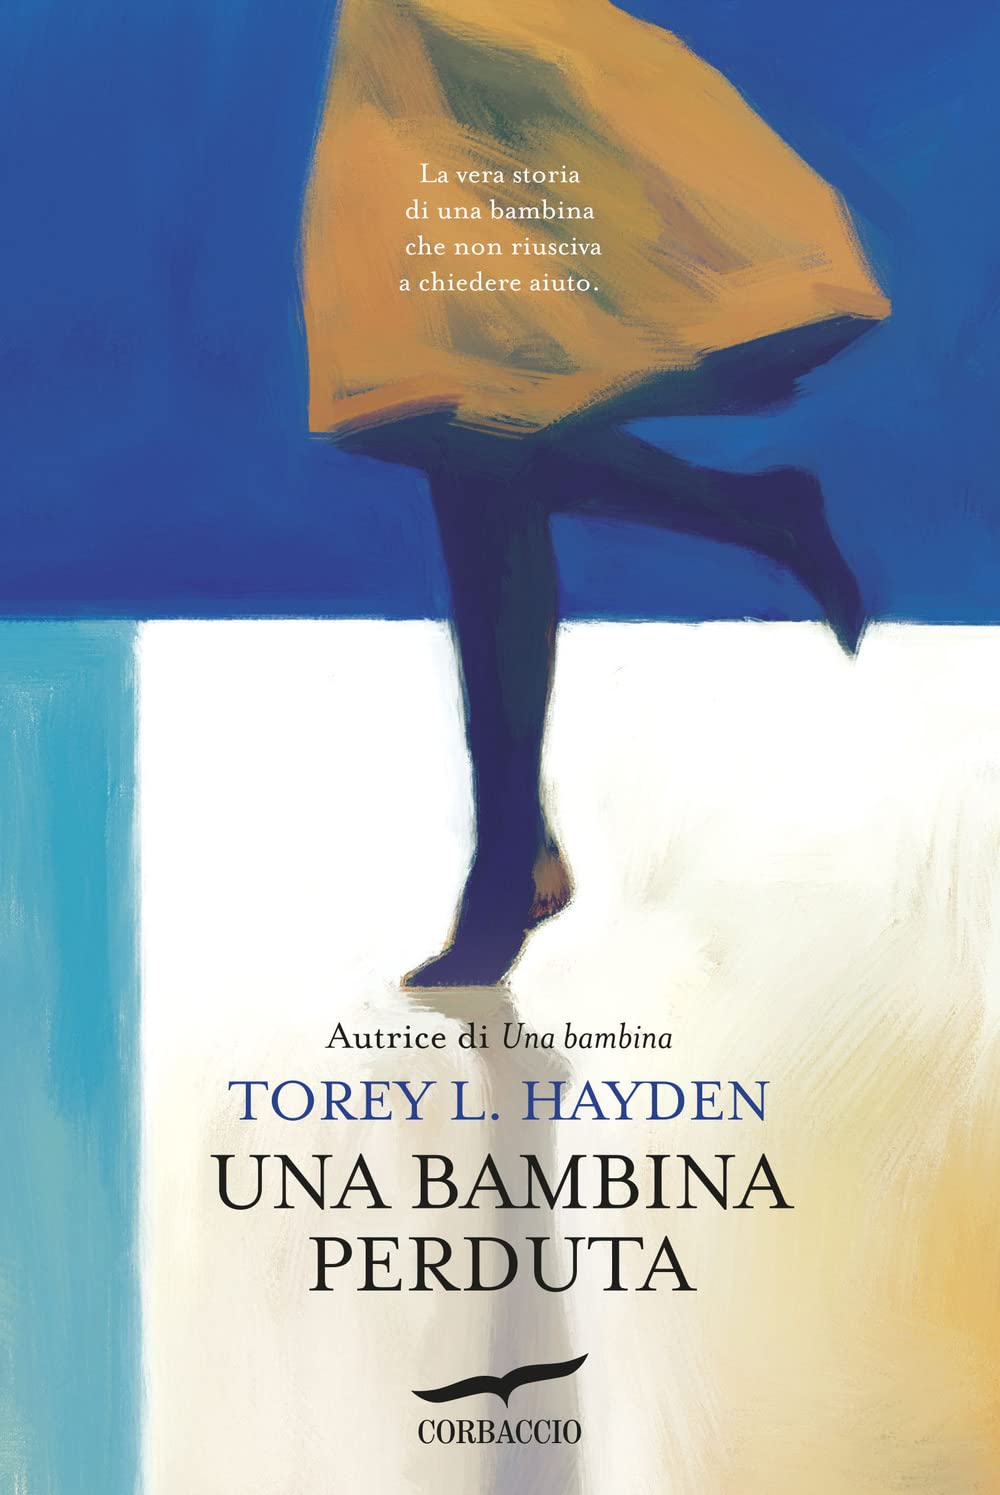 Torey L. Hayden: Una bambina perduta (EBook, italiano language, 2020, Corbaccio)